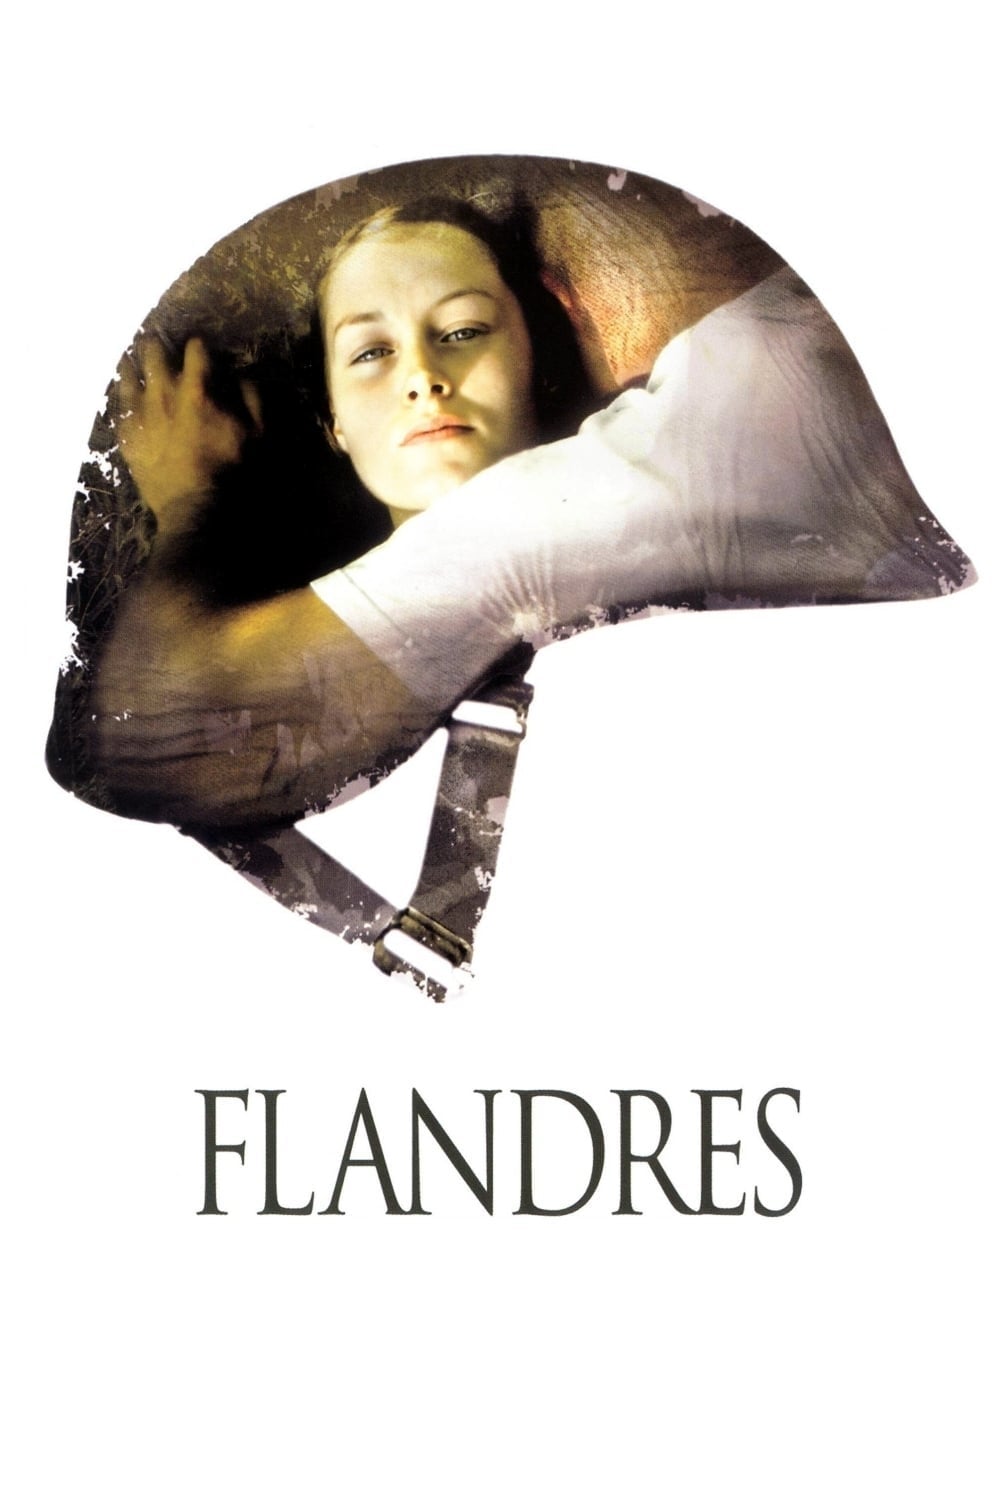 Flandres (2006) Download